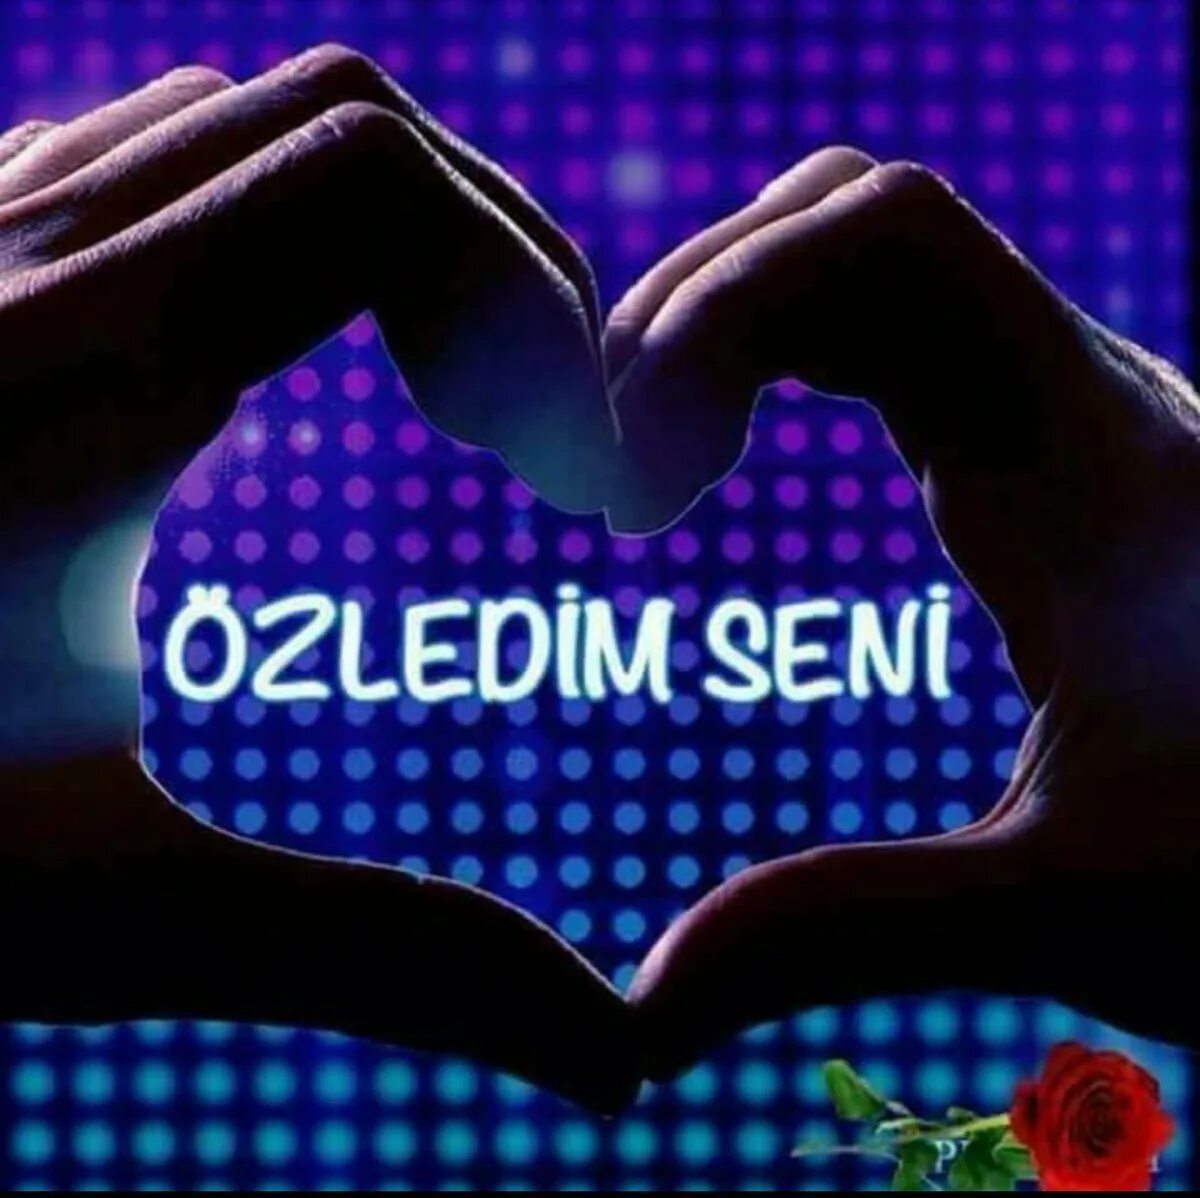 Хорошо прощай на турецком. Открытки о любви на турецком языке. Я скучаю на турецком. Люблю тебя на турецком языке. Турецкие картинки про любовь.